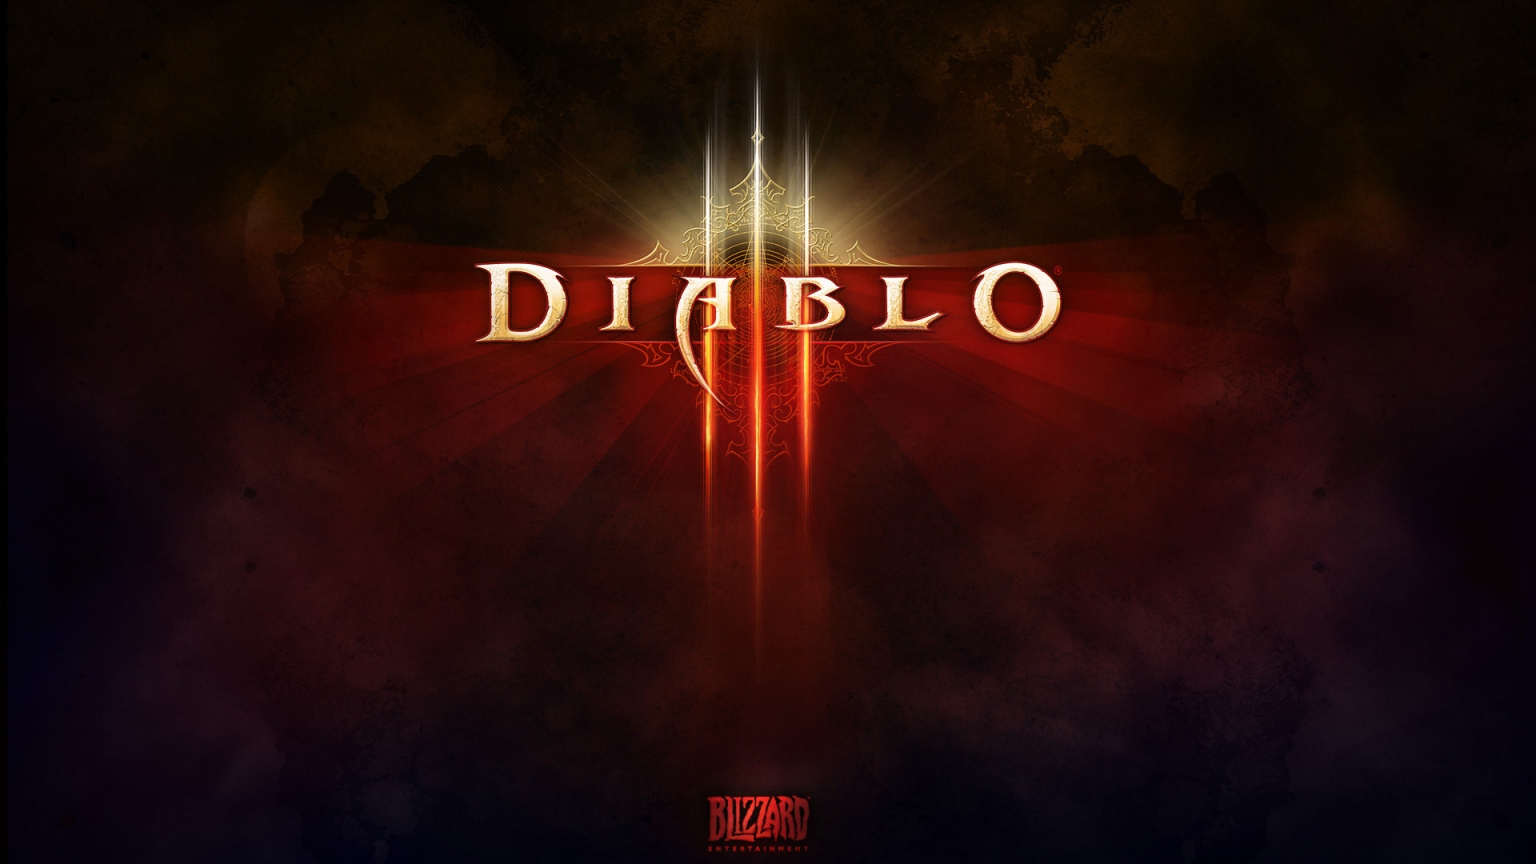 Diablo 3 Game Logo for 1536 x 864 HDTV resolution